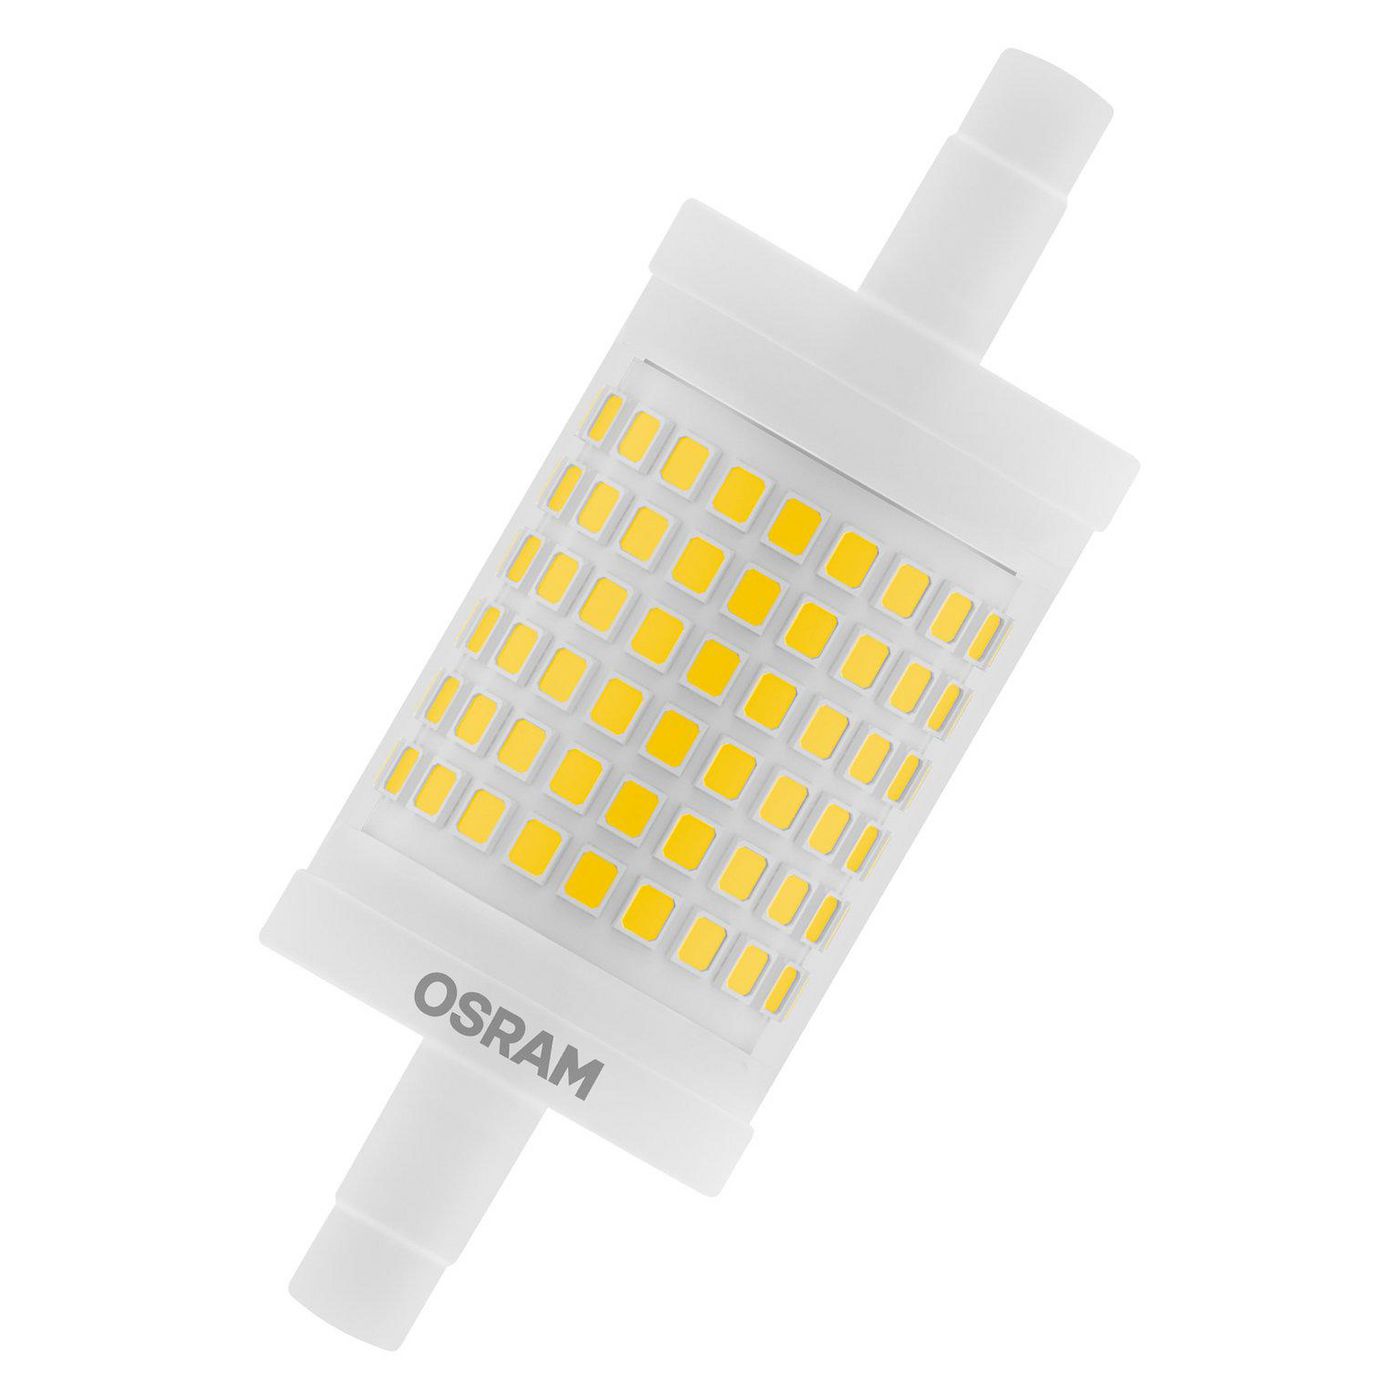 OSRAM LED EEK A++ (A++ - E) R7s Kolbenform 11.50 W = 100 W Warmweiß (Ø x L) 28 mm x 78 mm 1 St.